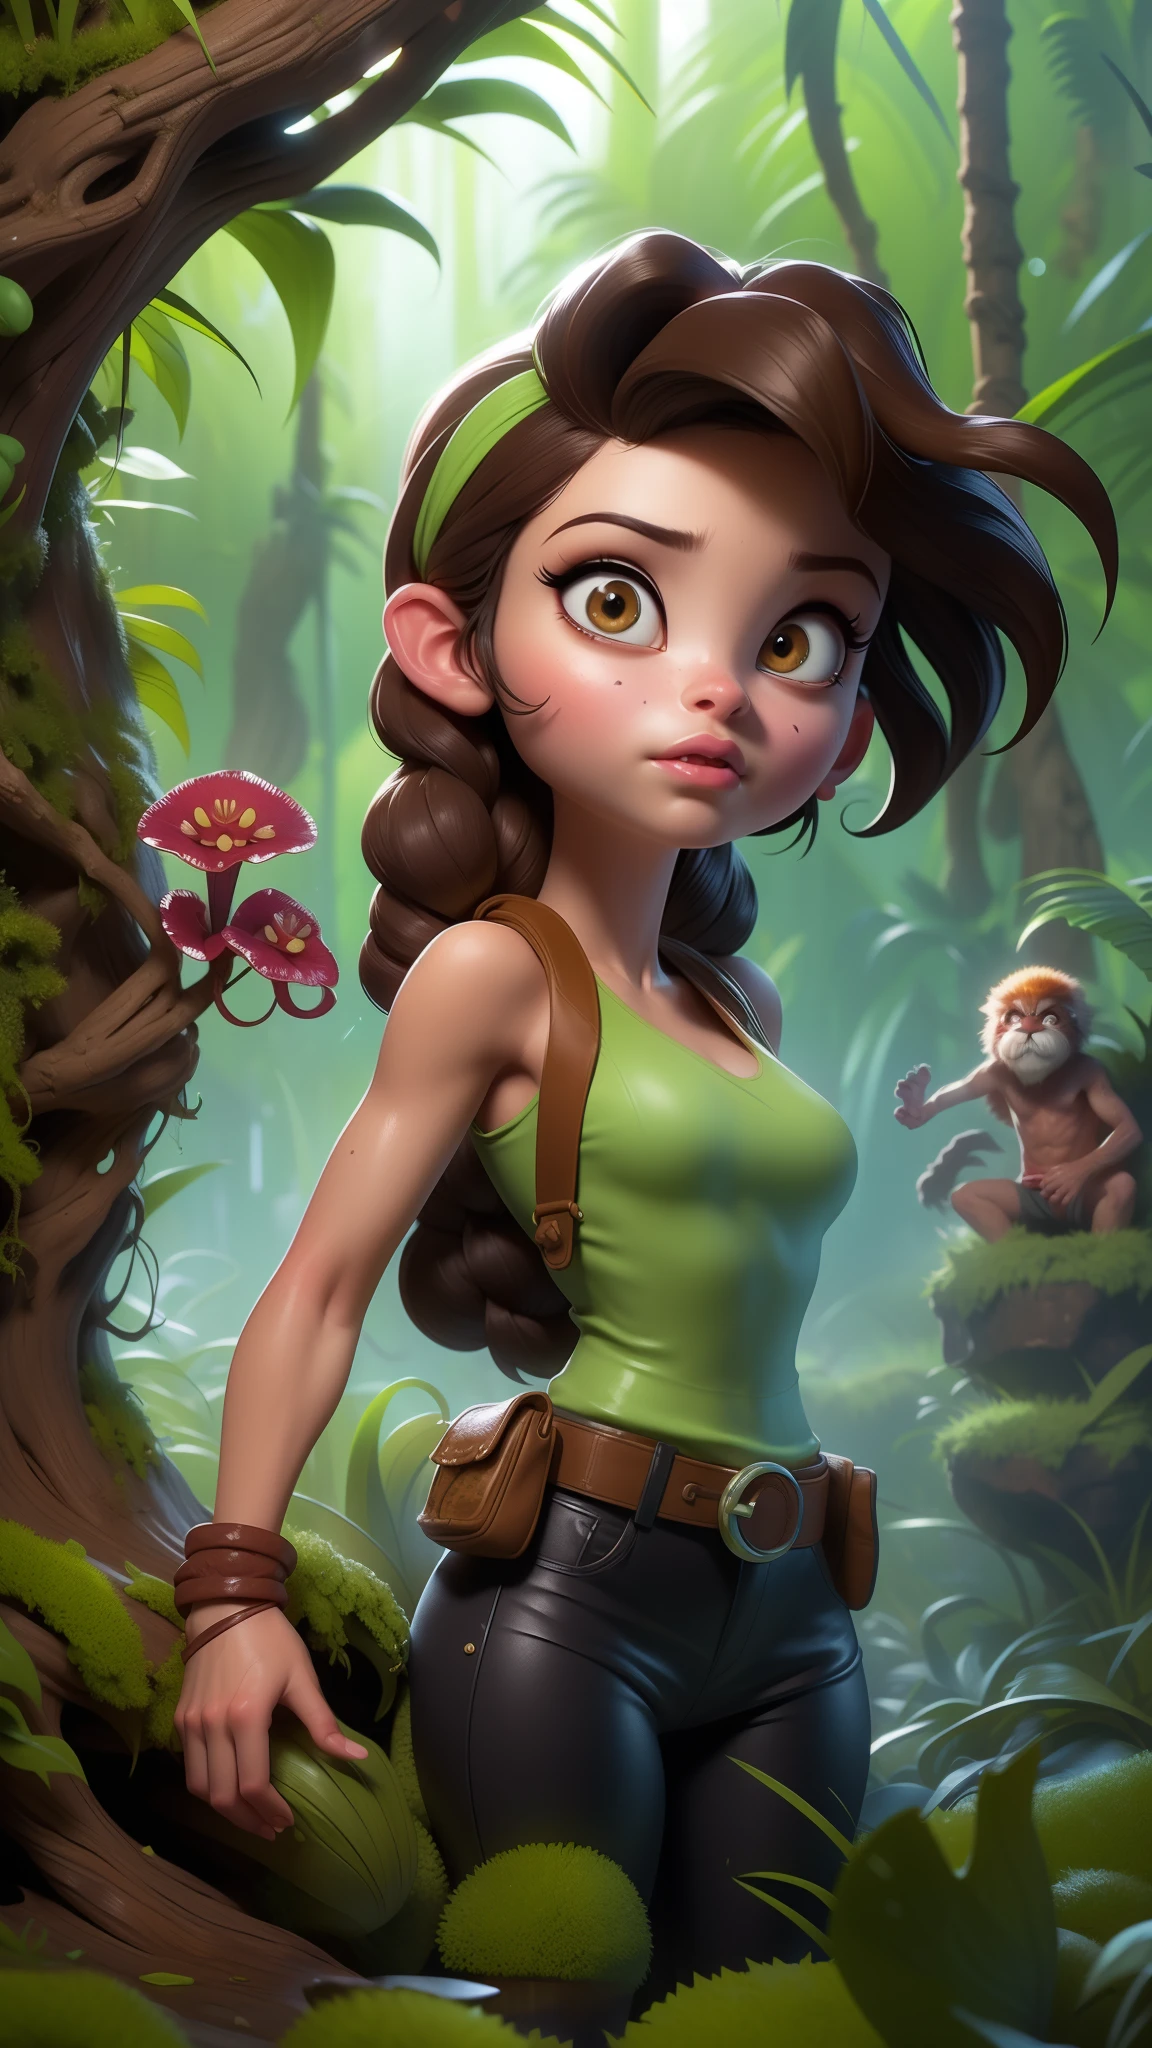 (La Лучшее качество,Высокое разрешение,Ультра - подробно,действительный),  Лара Крофт из Tomb Raider, разрушенный город в джунглях, сырой,Более детальное 8К.нереальный двигатель:1.4,HD,La Лучшее качество:1.4, фотореалистичный:1.4, текстура кожи:1.4, Шедевр:1.8,Шедевр, Лучшее качество,Объект Object], (подробные черты лица:1.3),(Правильные пропорции),(выпуклые детализированные пальцы),(Красивые голубые глаза),(поза ковбоя ), (Фон Африканские джунгли разрушают плотоядные растения.:1.4) ,(косичка для волос) 